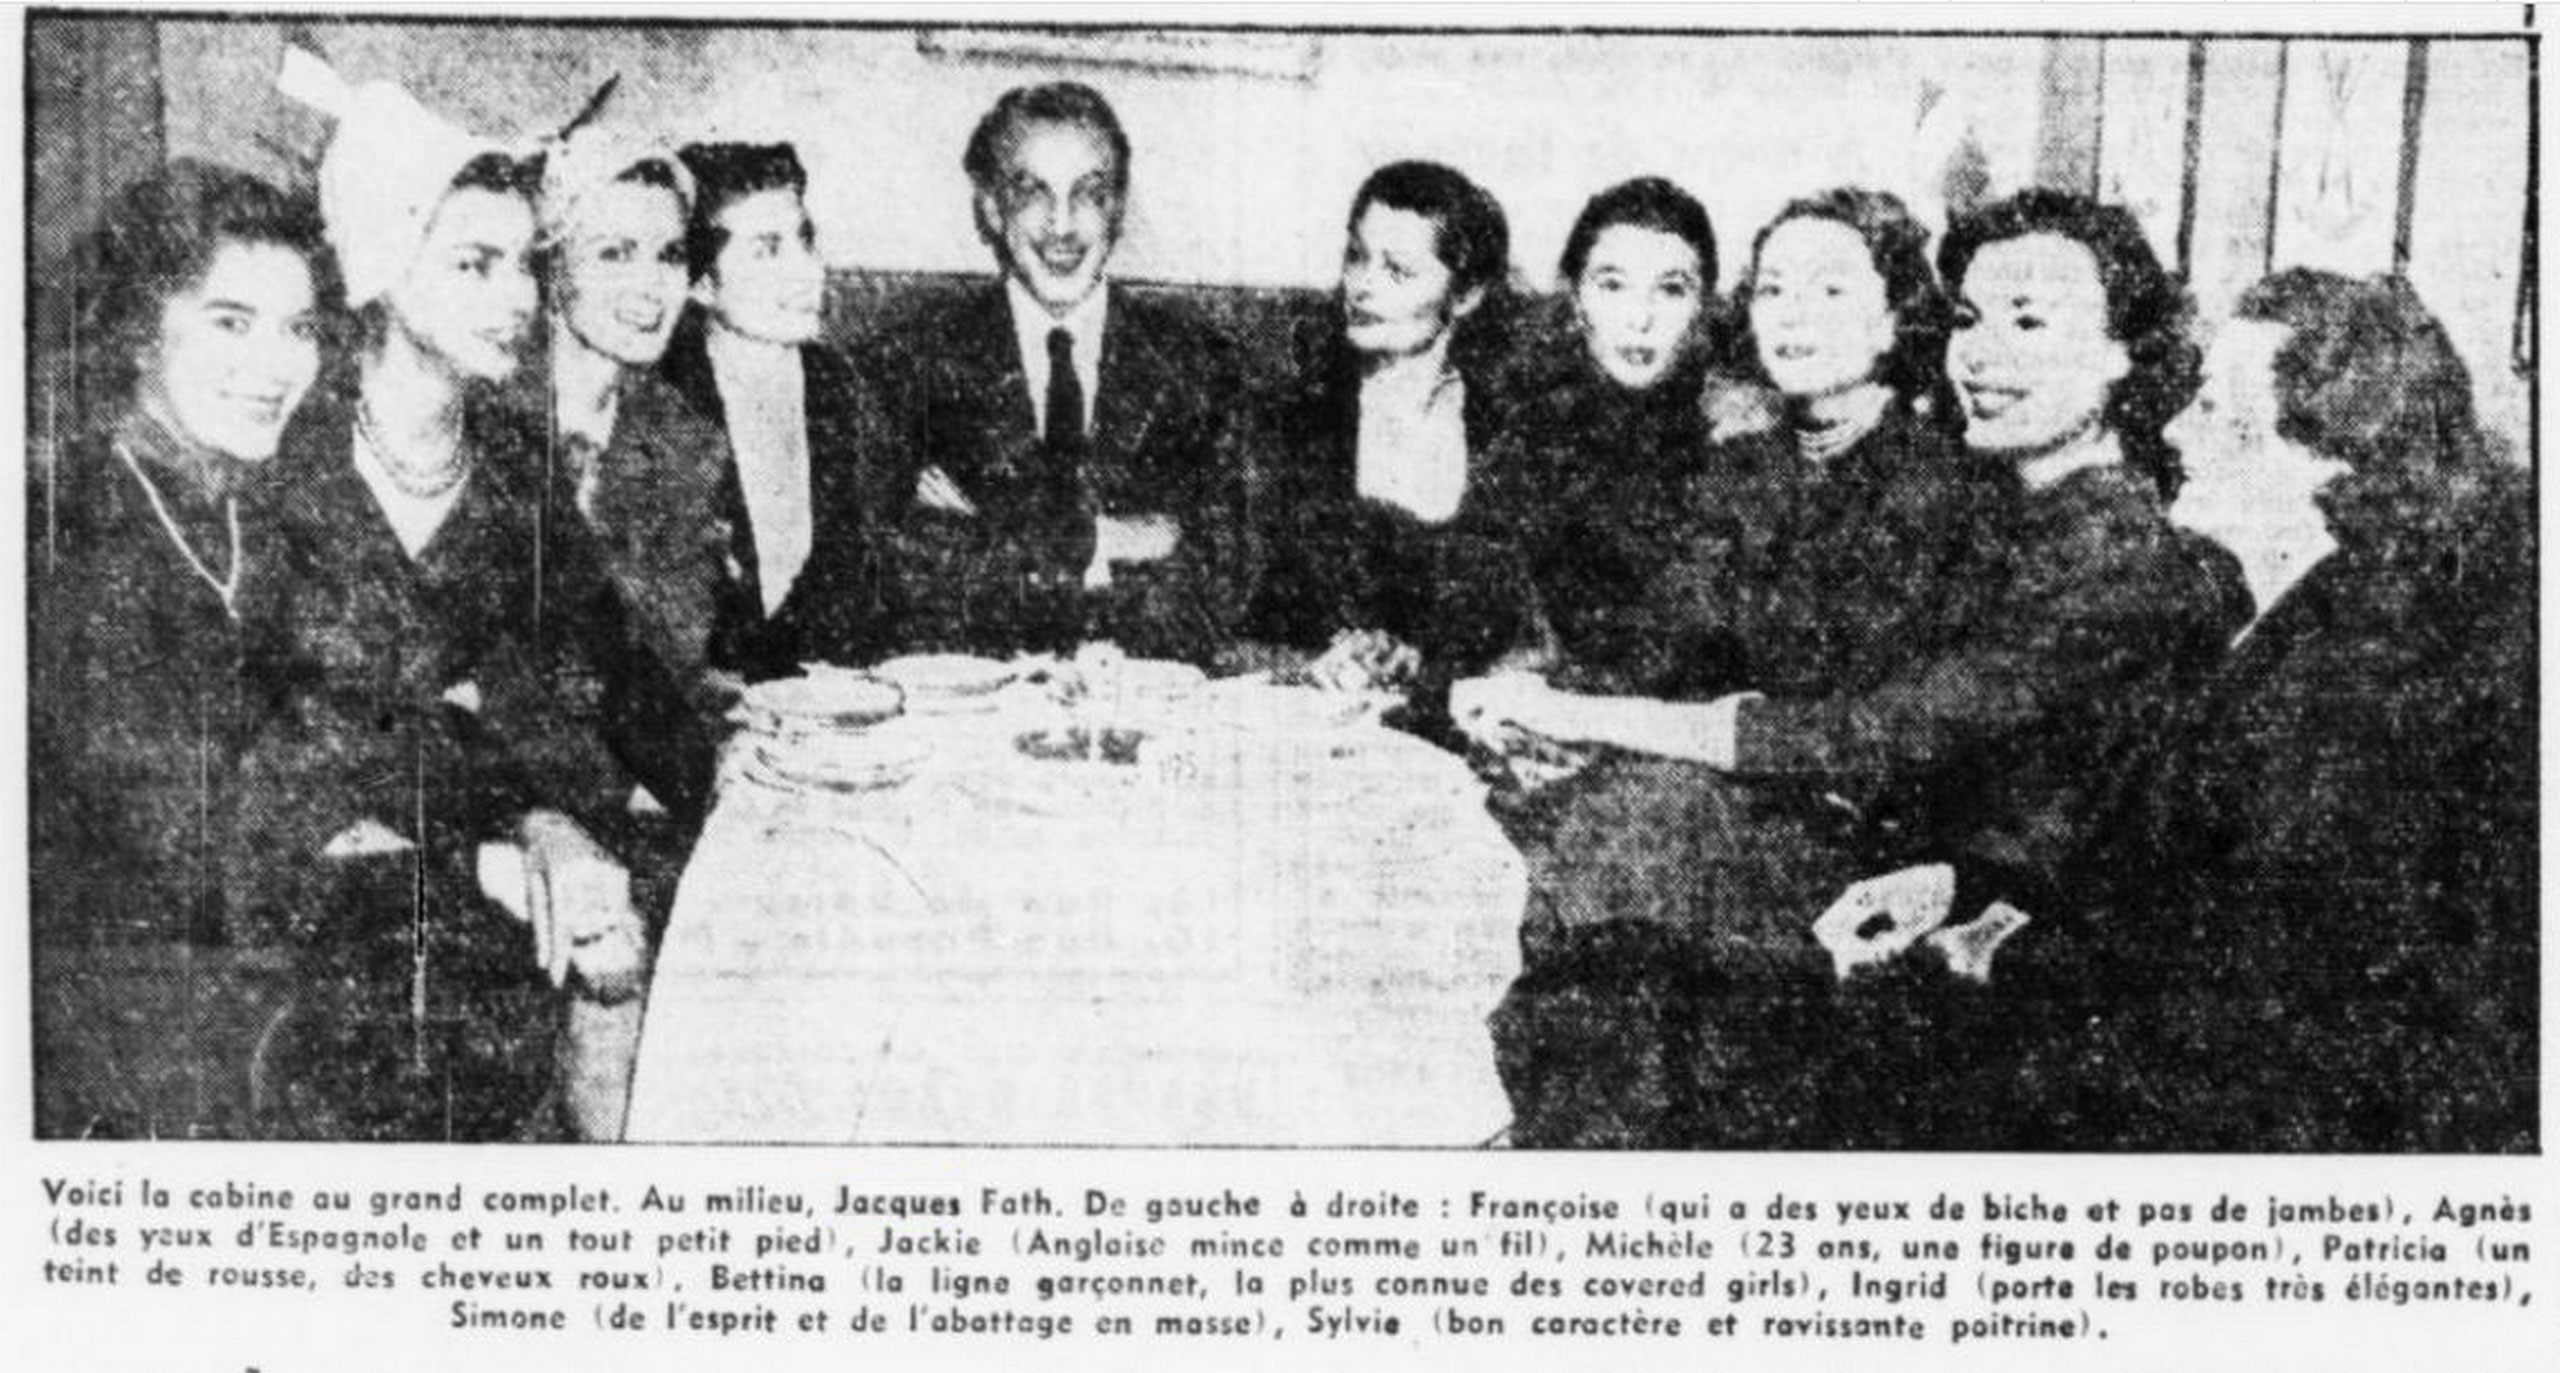 D’ailleurs, parmi la cabine Fath en 1950, on ne trouve pas trace de Florence ni de Marcelle Pichon. (L’intransigeant, 24 novembre 1950)<br><br>